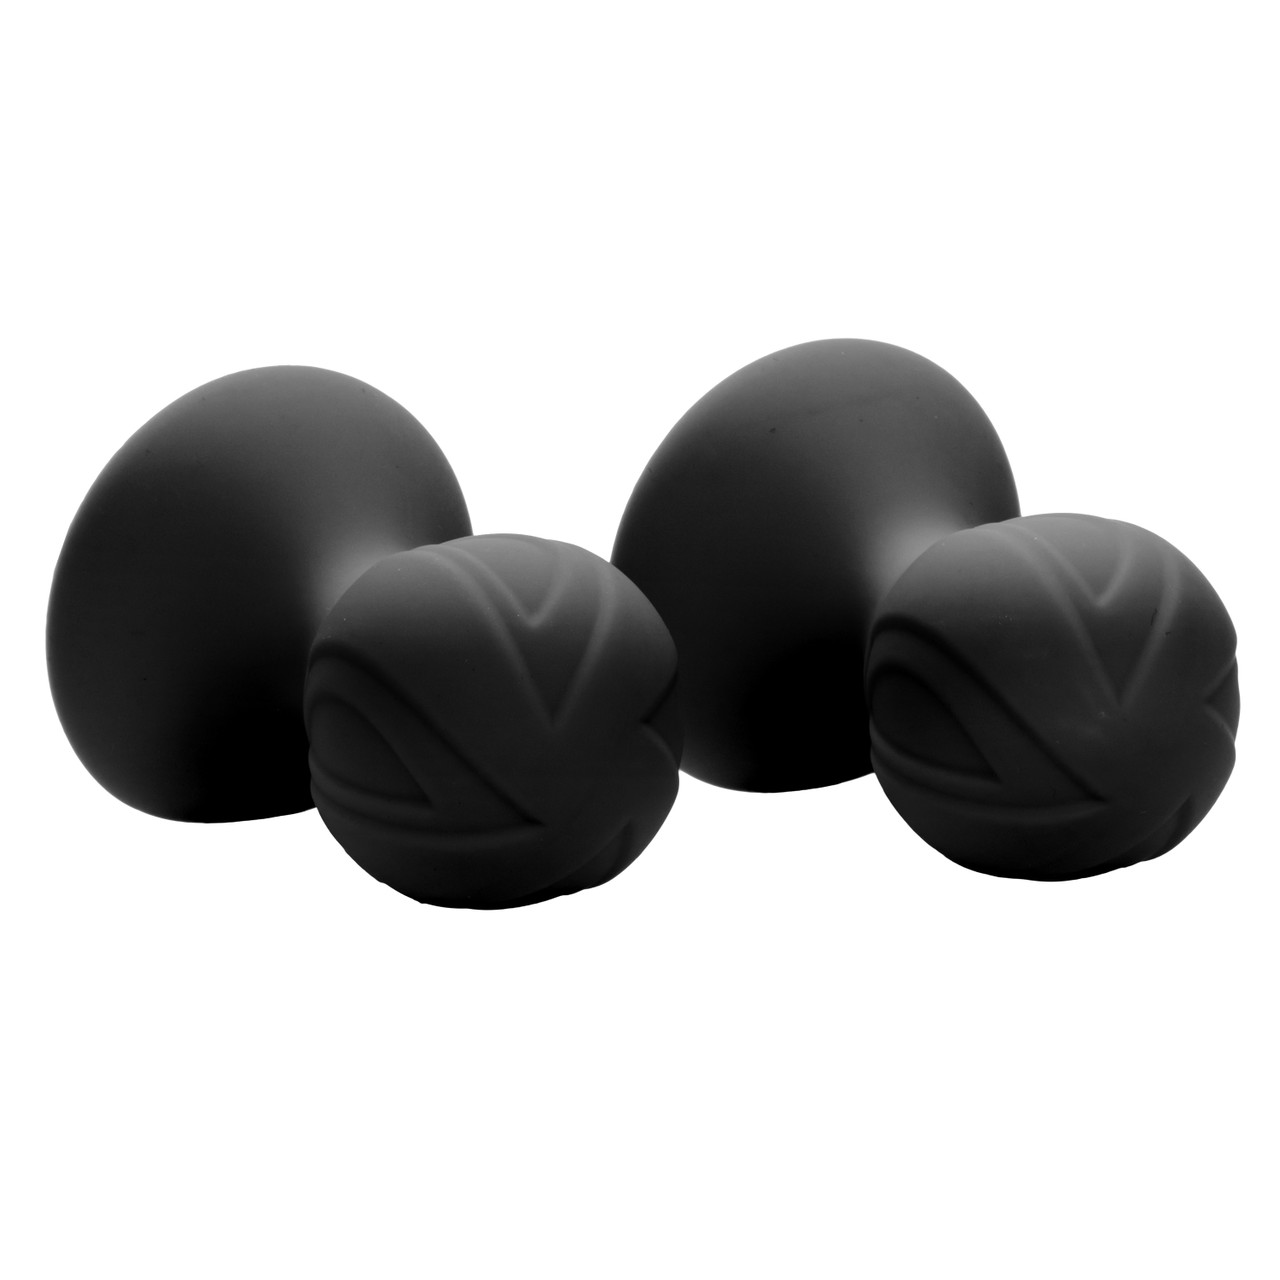 Насадки-присоски для сосков CalExotics Nipple Play Pro, черные